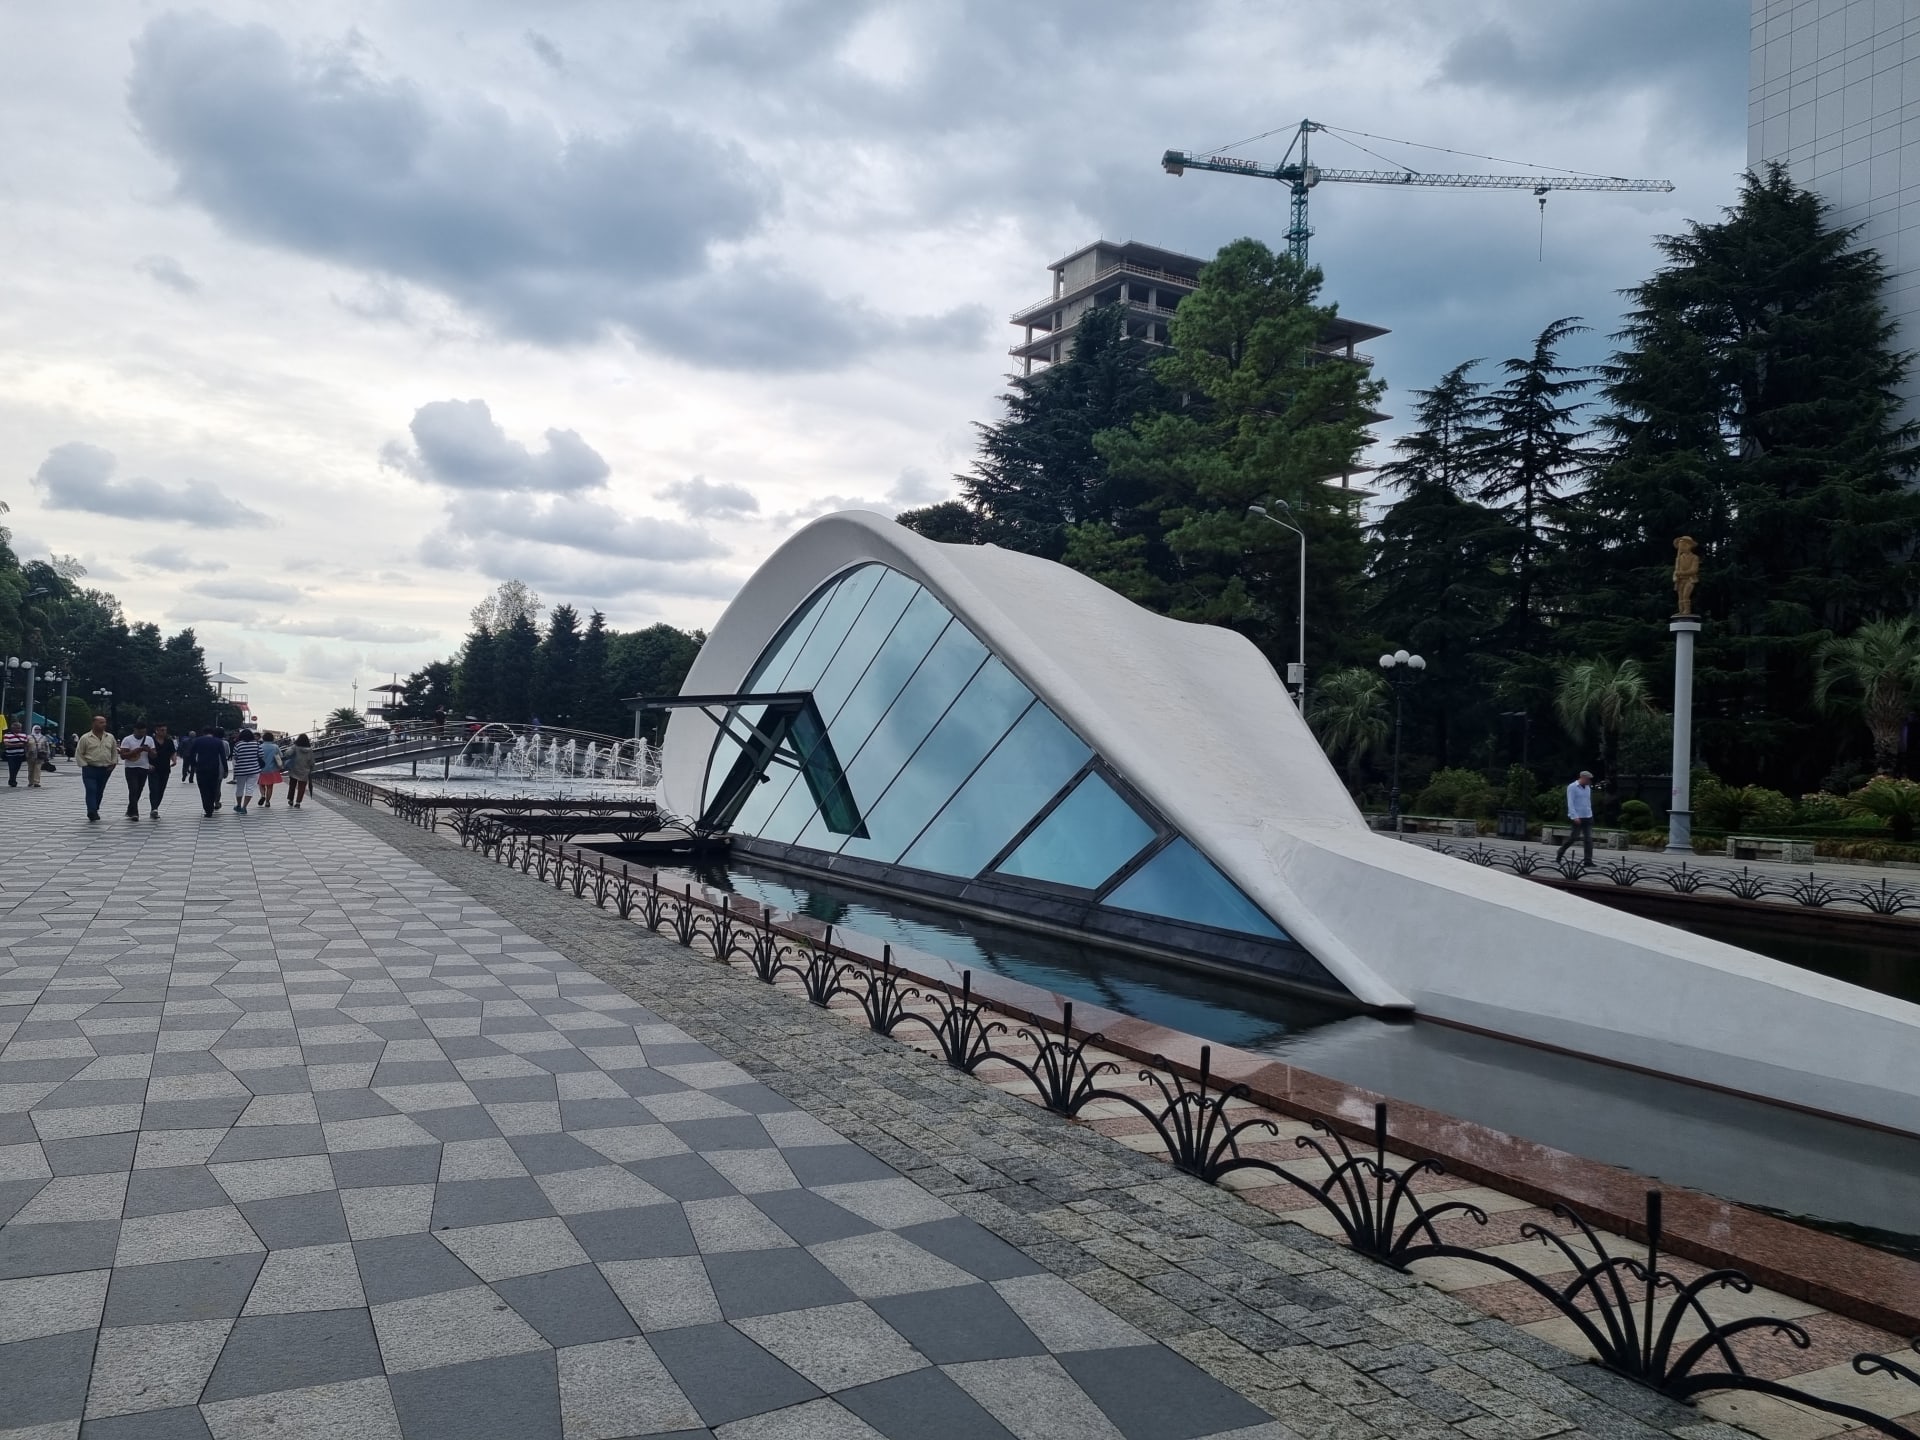 V gruzínském městě Batumi turisté najdou jak moderní architekturu, tak i historické stavby.